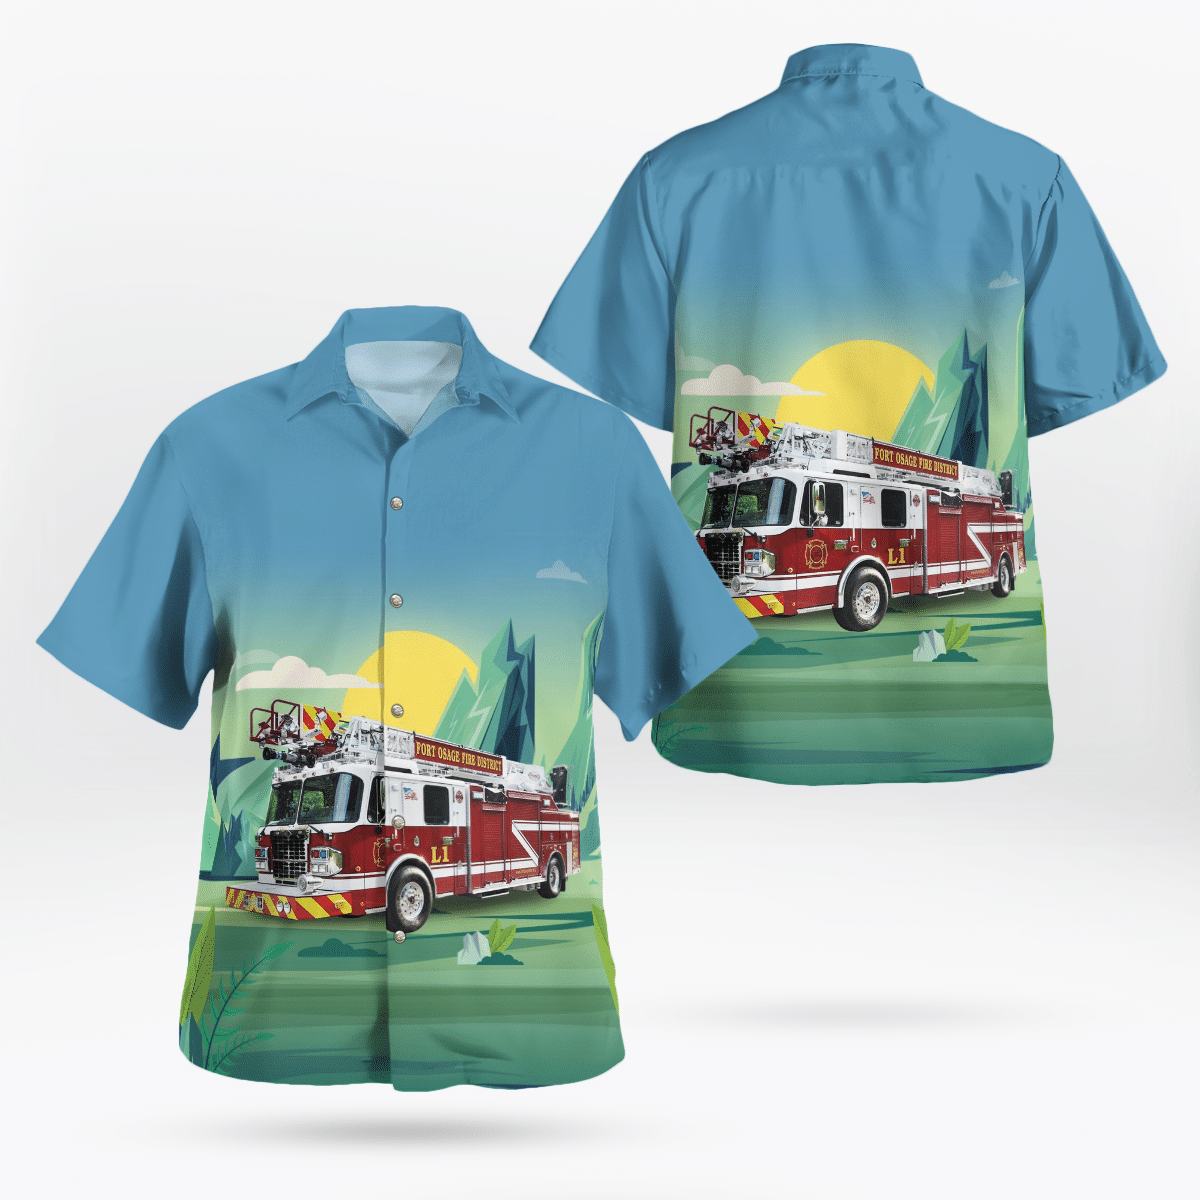 You won't regret buying these Aloha Shirt 81